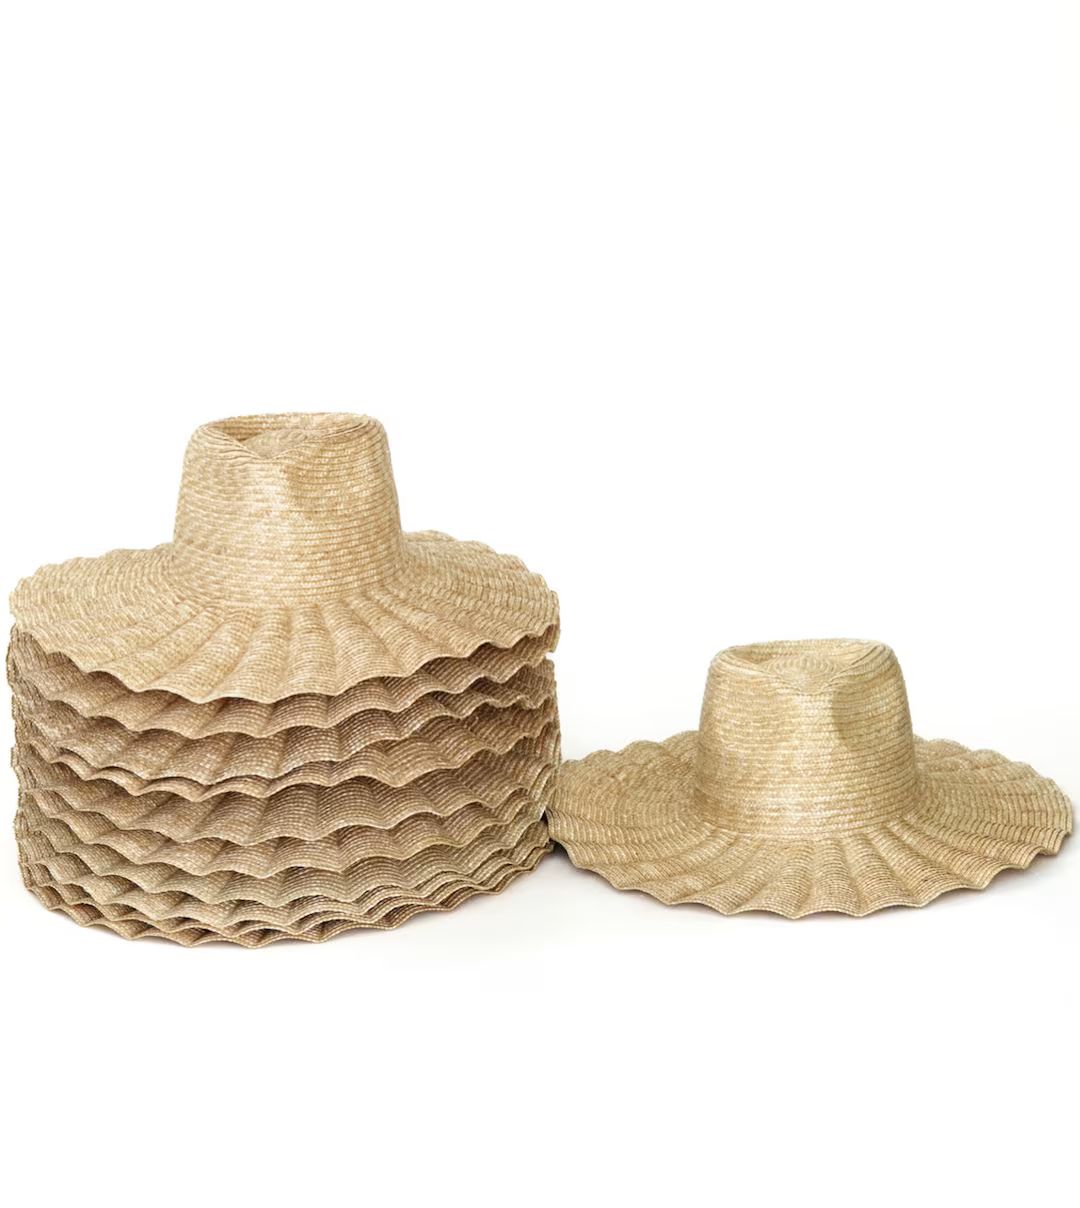 Nalu - Wide brim straw hat, straw beach hat, sun hat, summer hat, straw headwear, wide brimmed | Etsy (US)